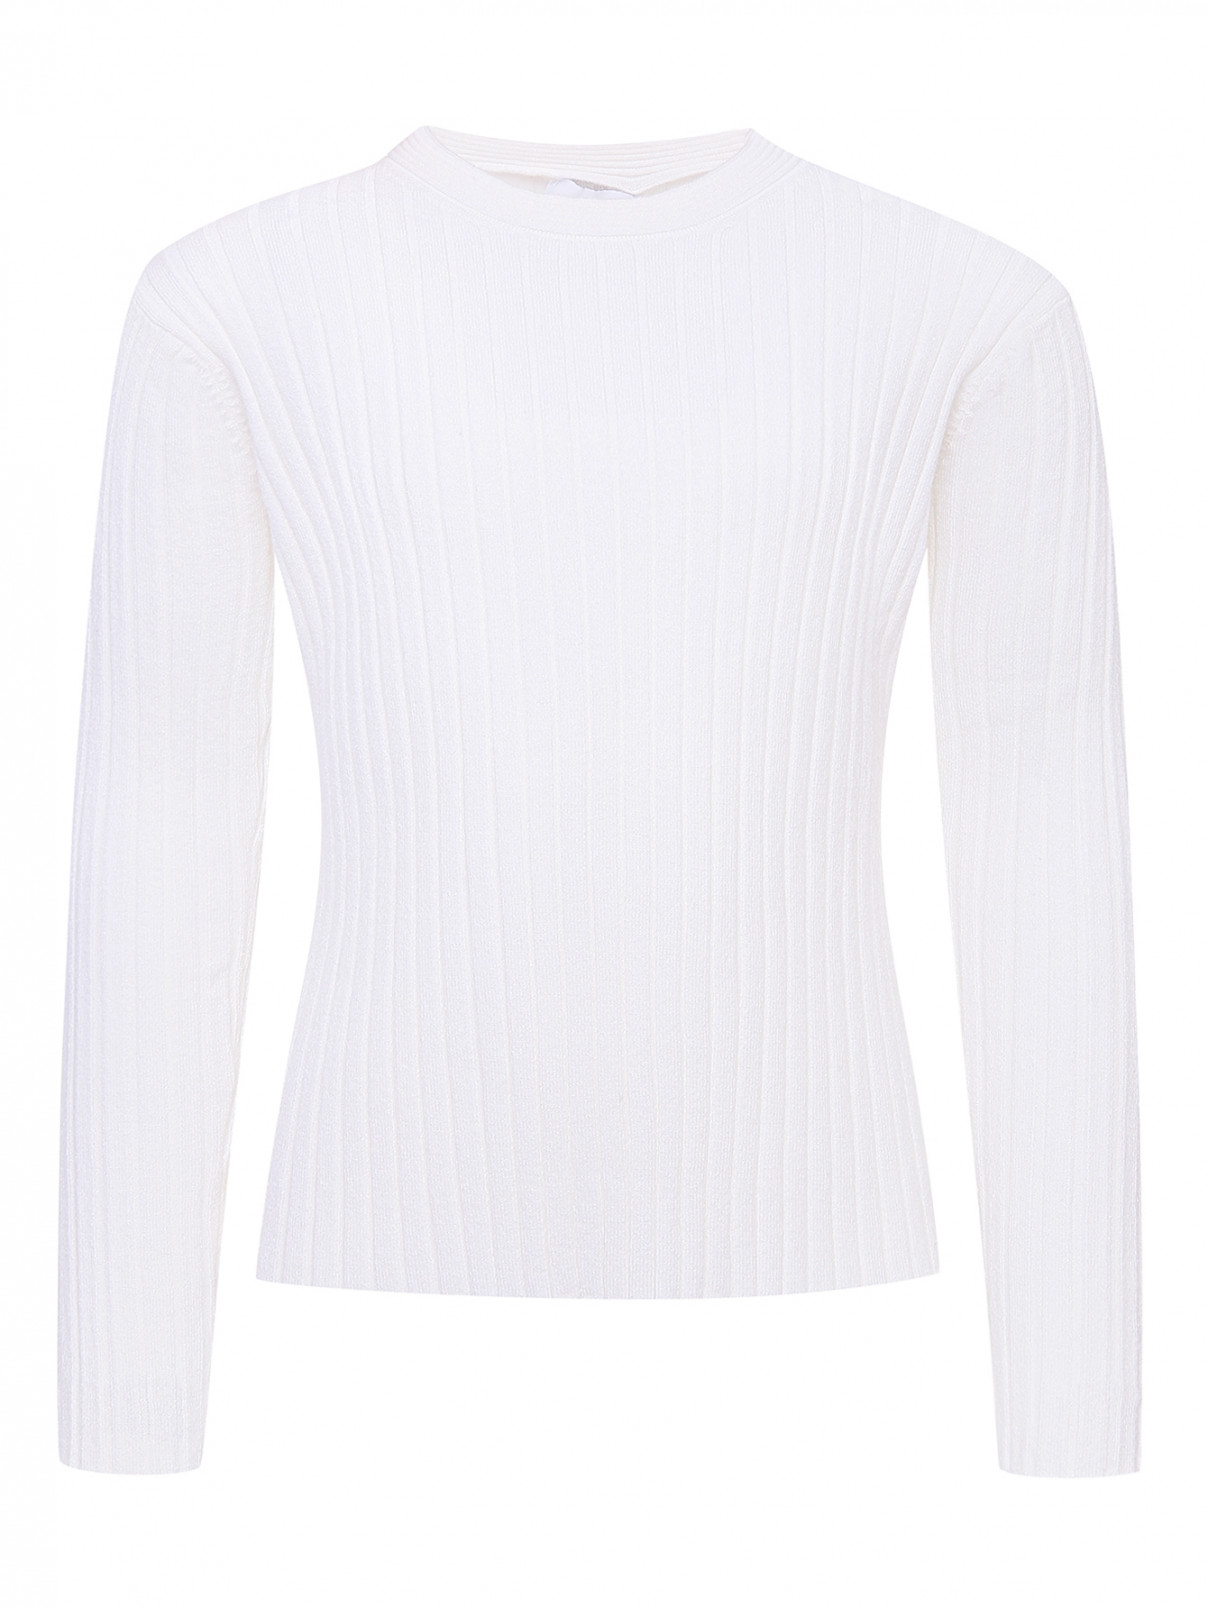 Трикотажный джемпер с круглым вырезом Aletta Couture  –  Общий вид  – Цвет:  Белый